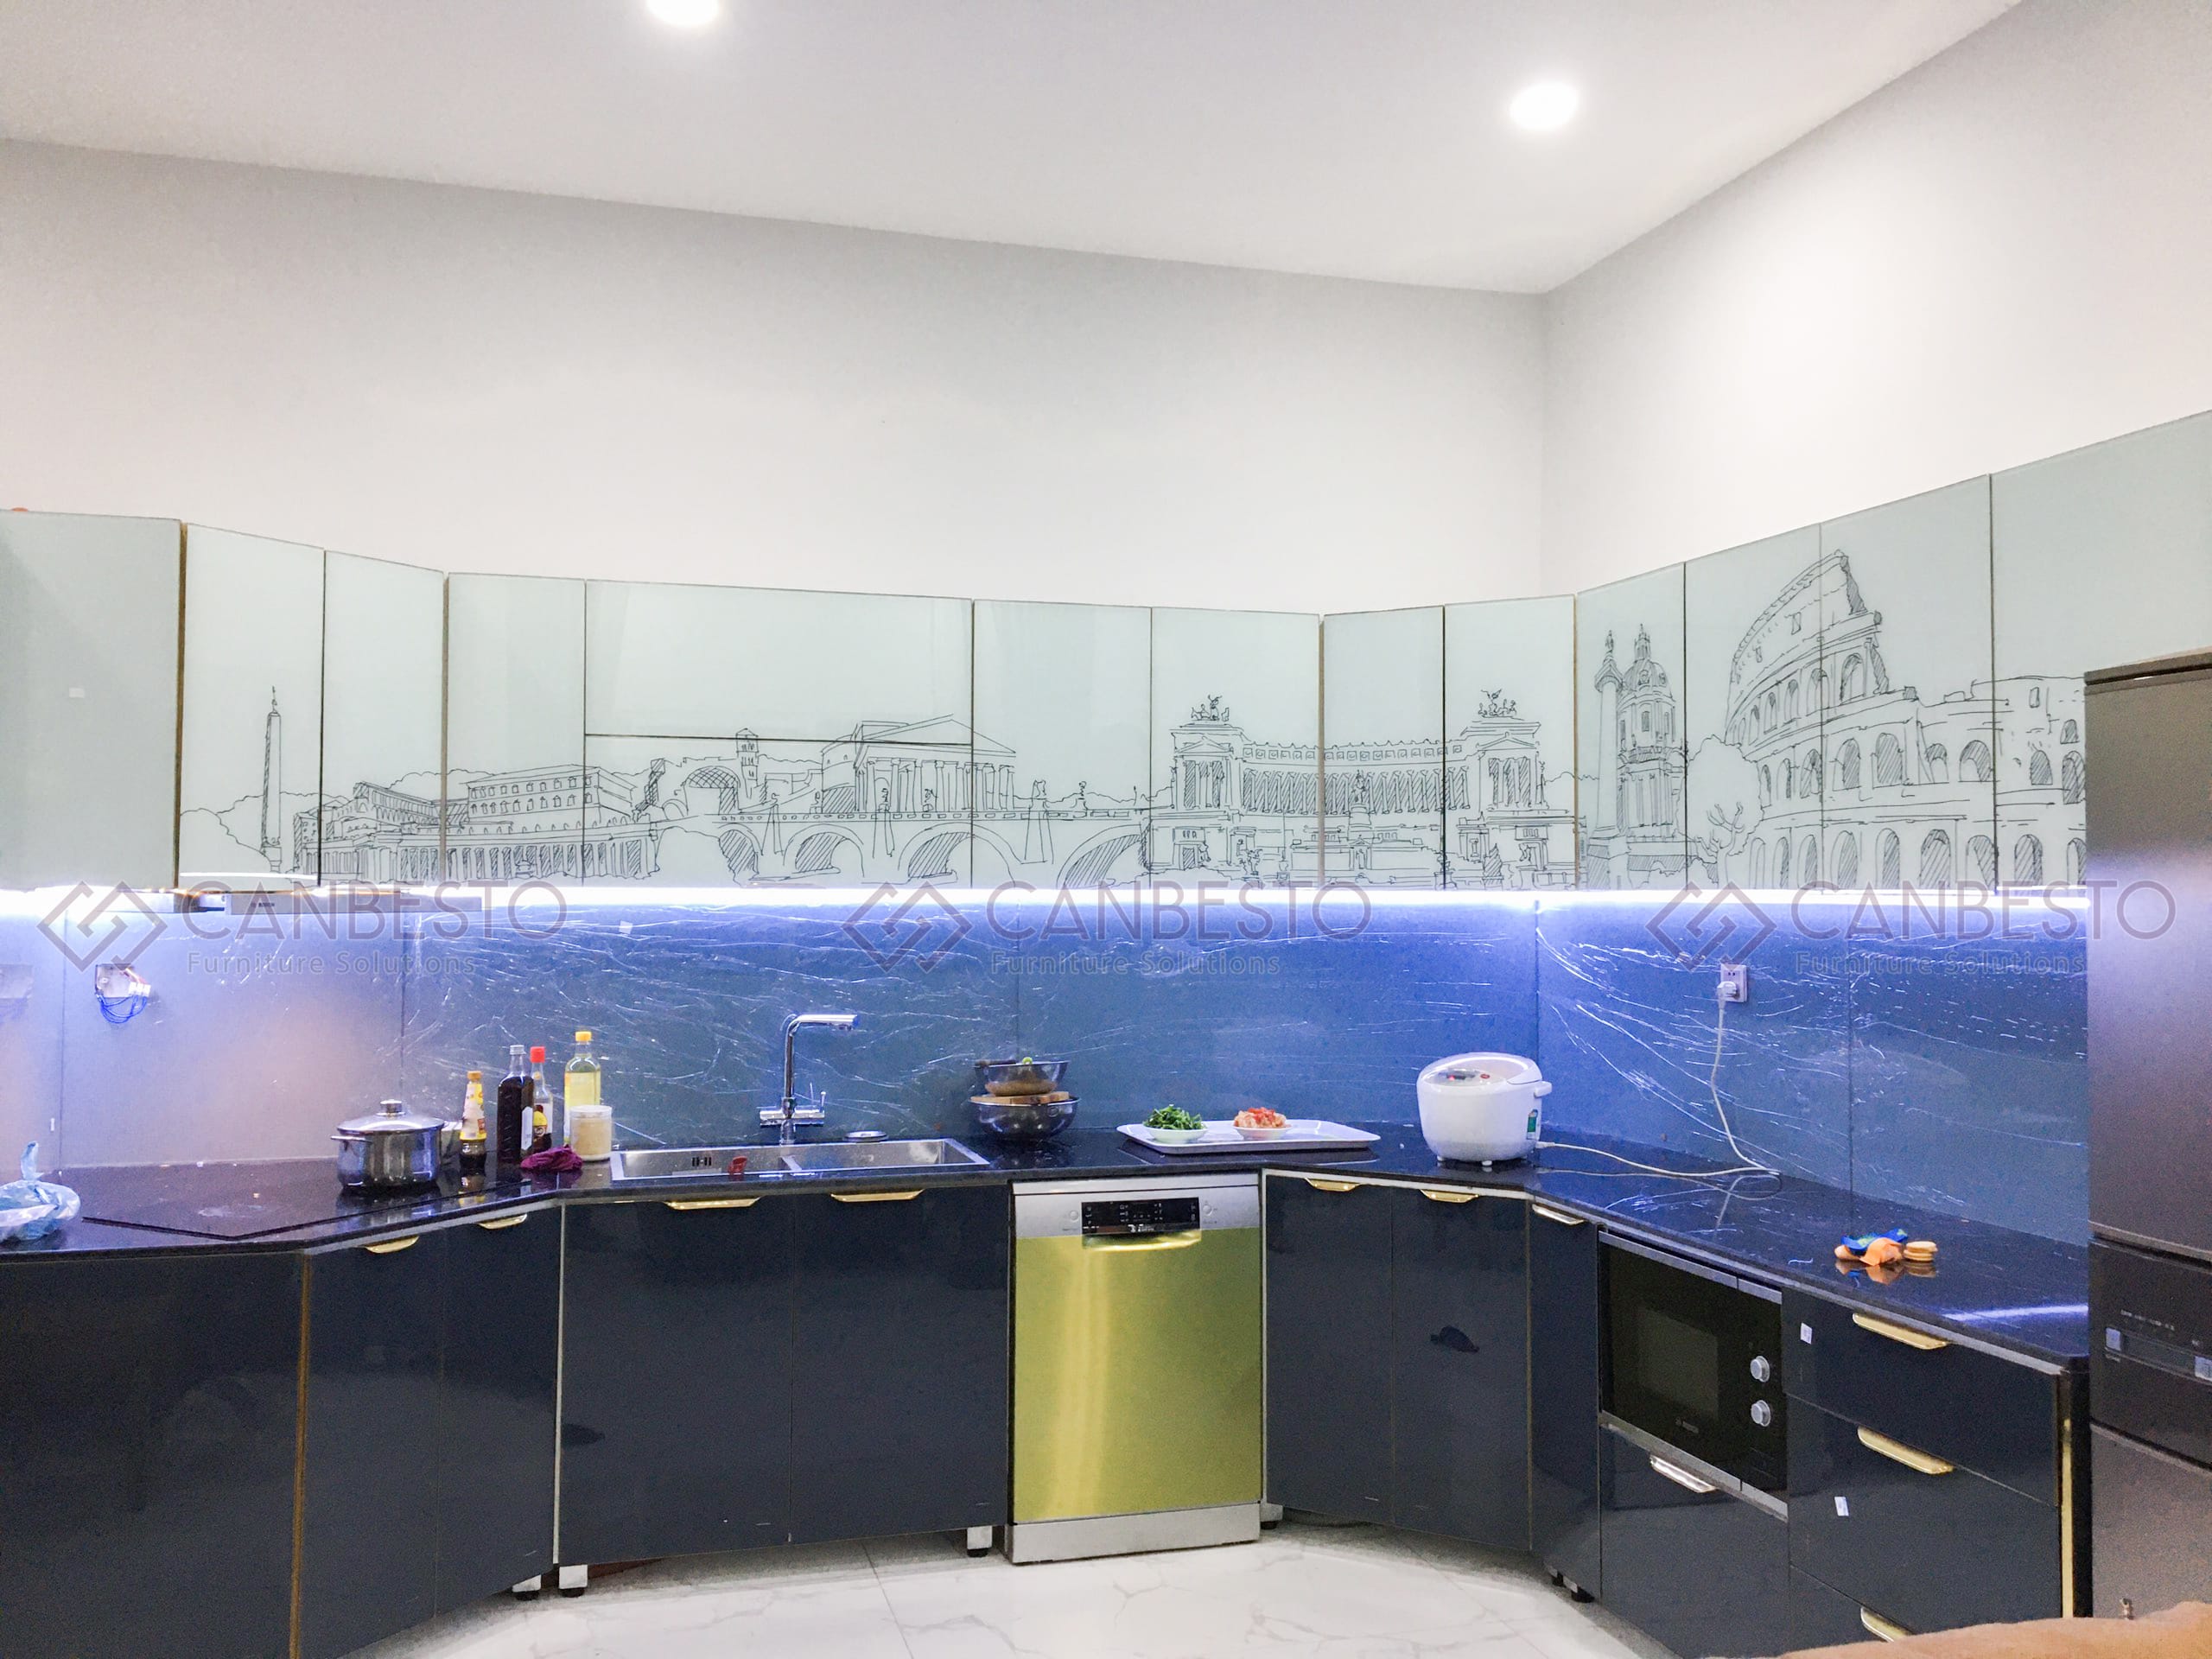 Tủ bếp nhôm kính, thiết kế nội thất tại Biên Hòa - Đồng Nai.